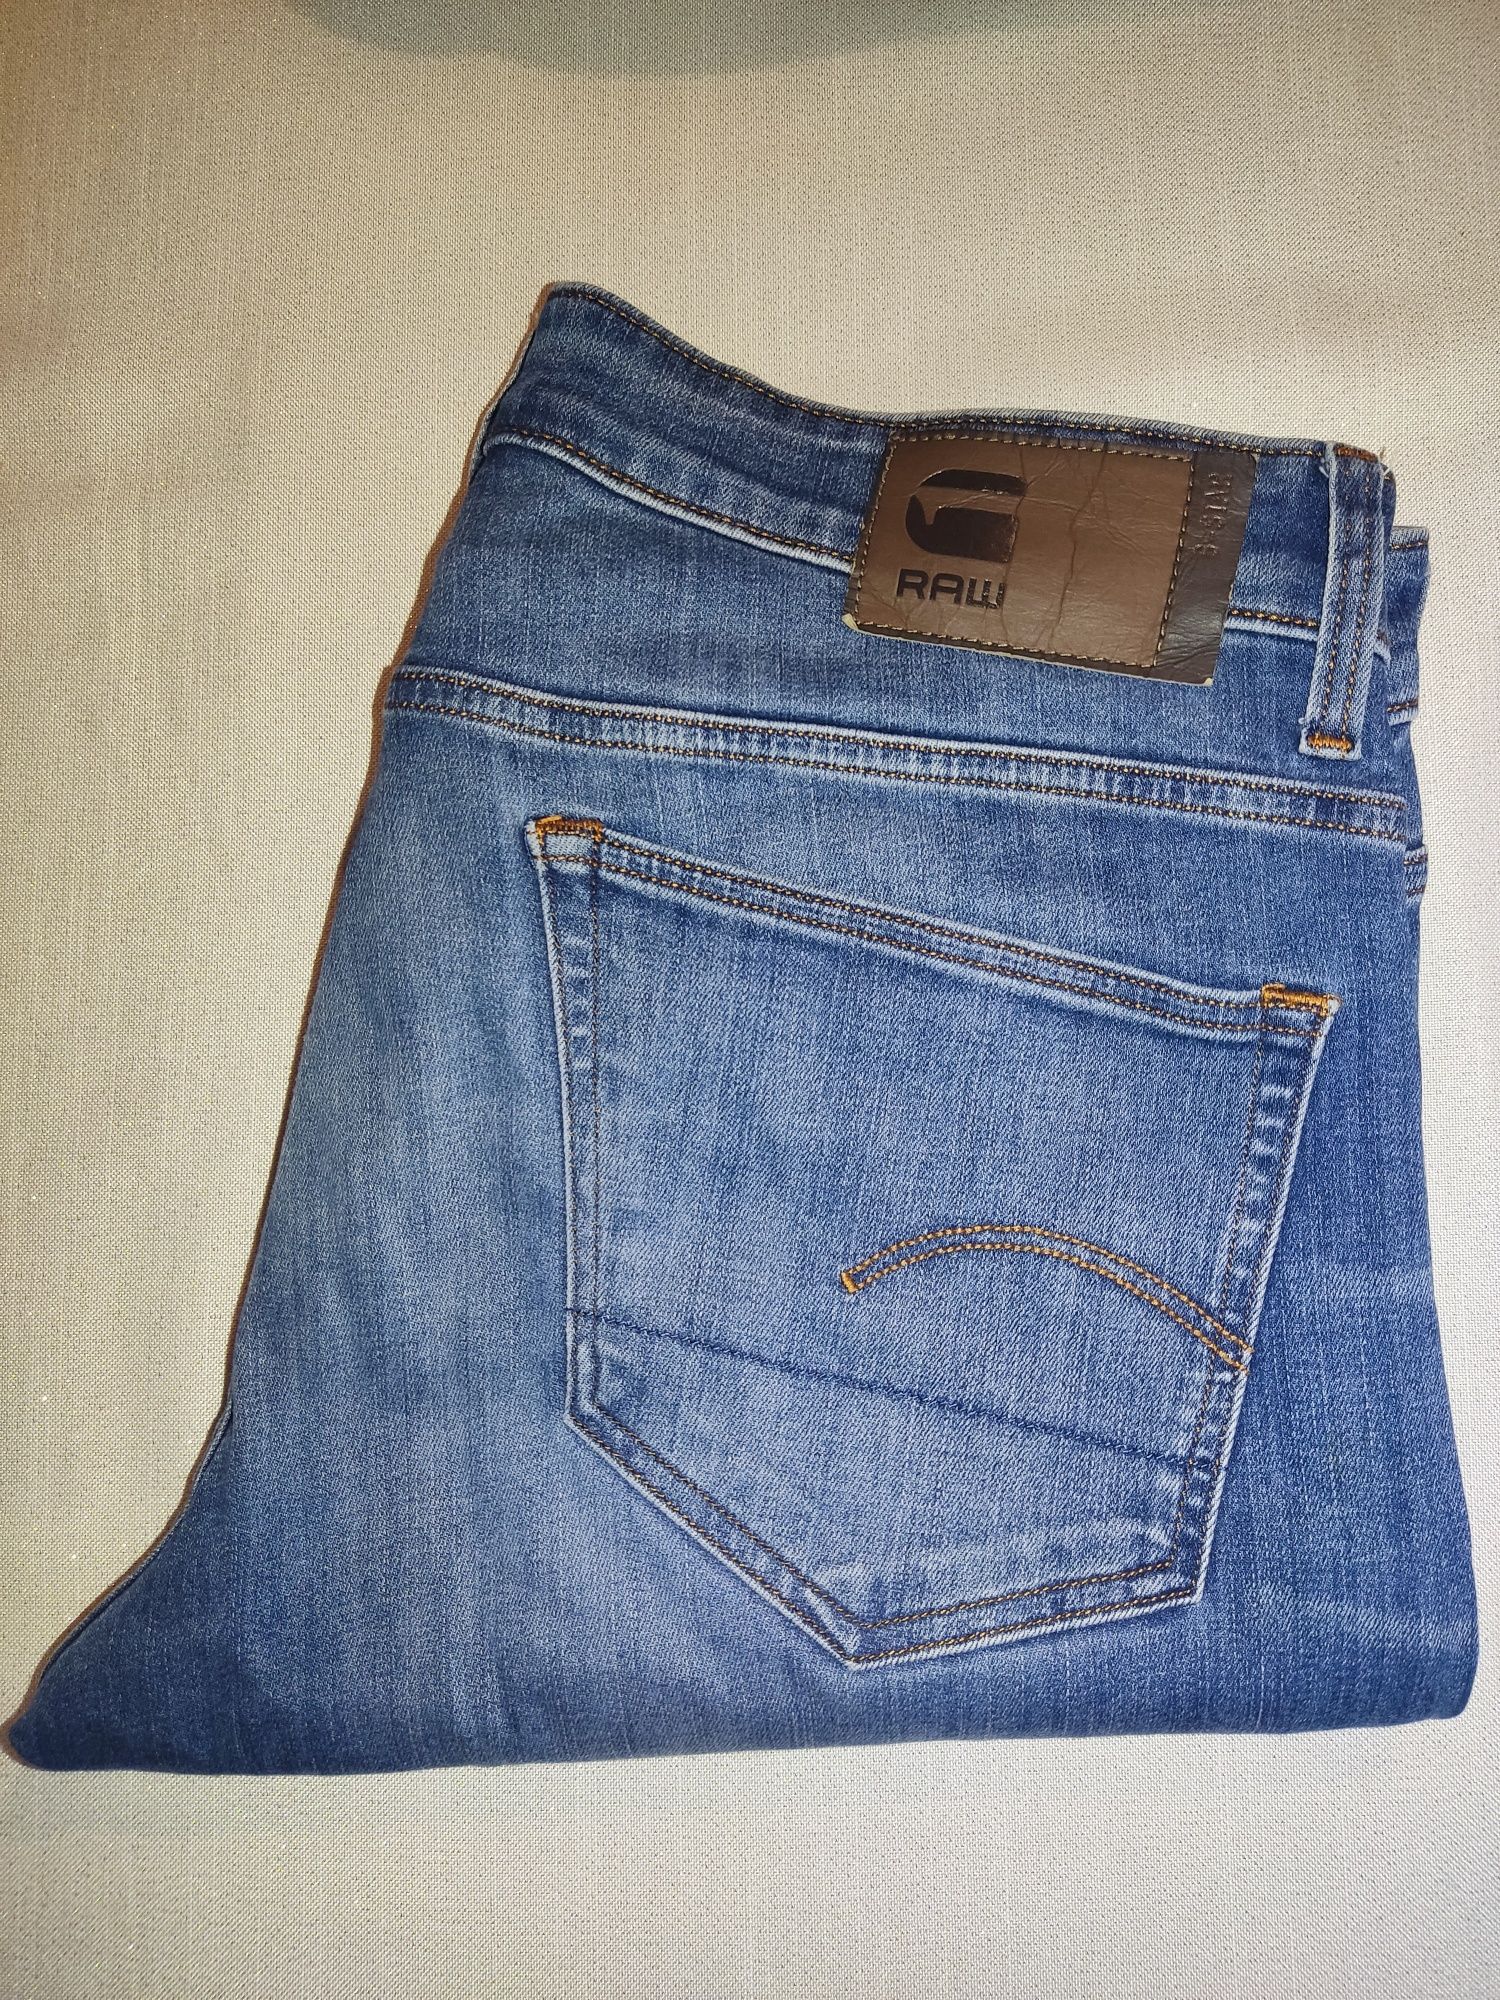 Spodnie G-star 33/32 Jeans